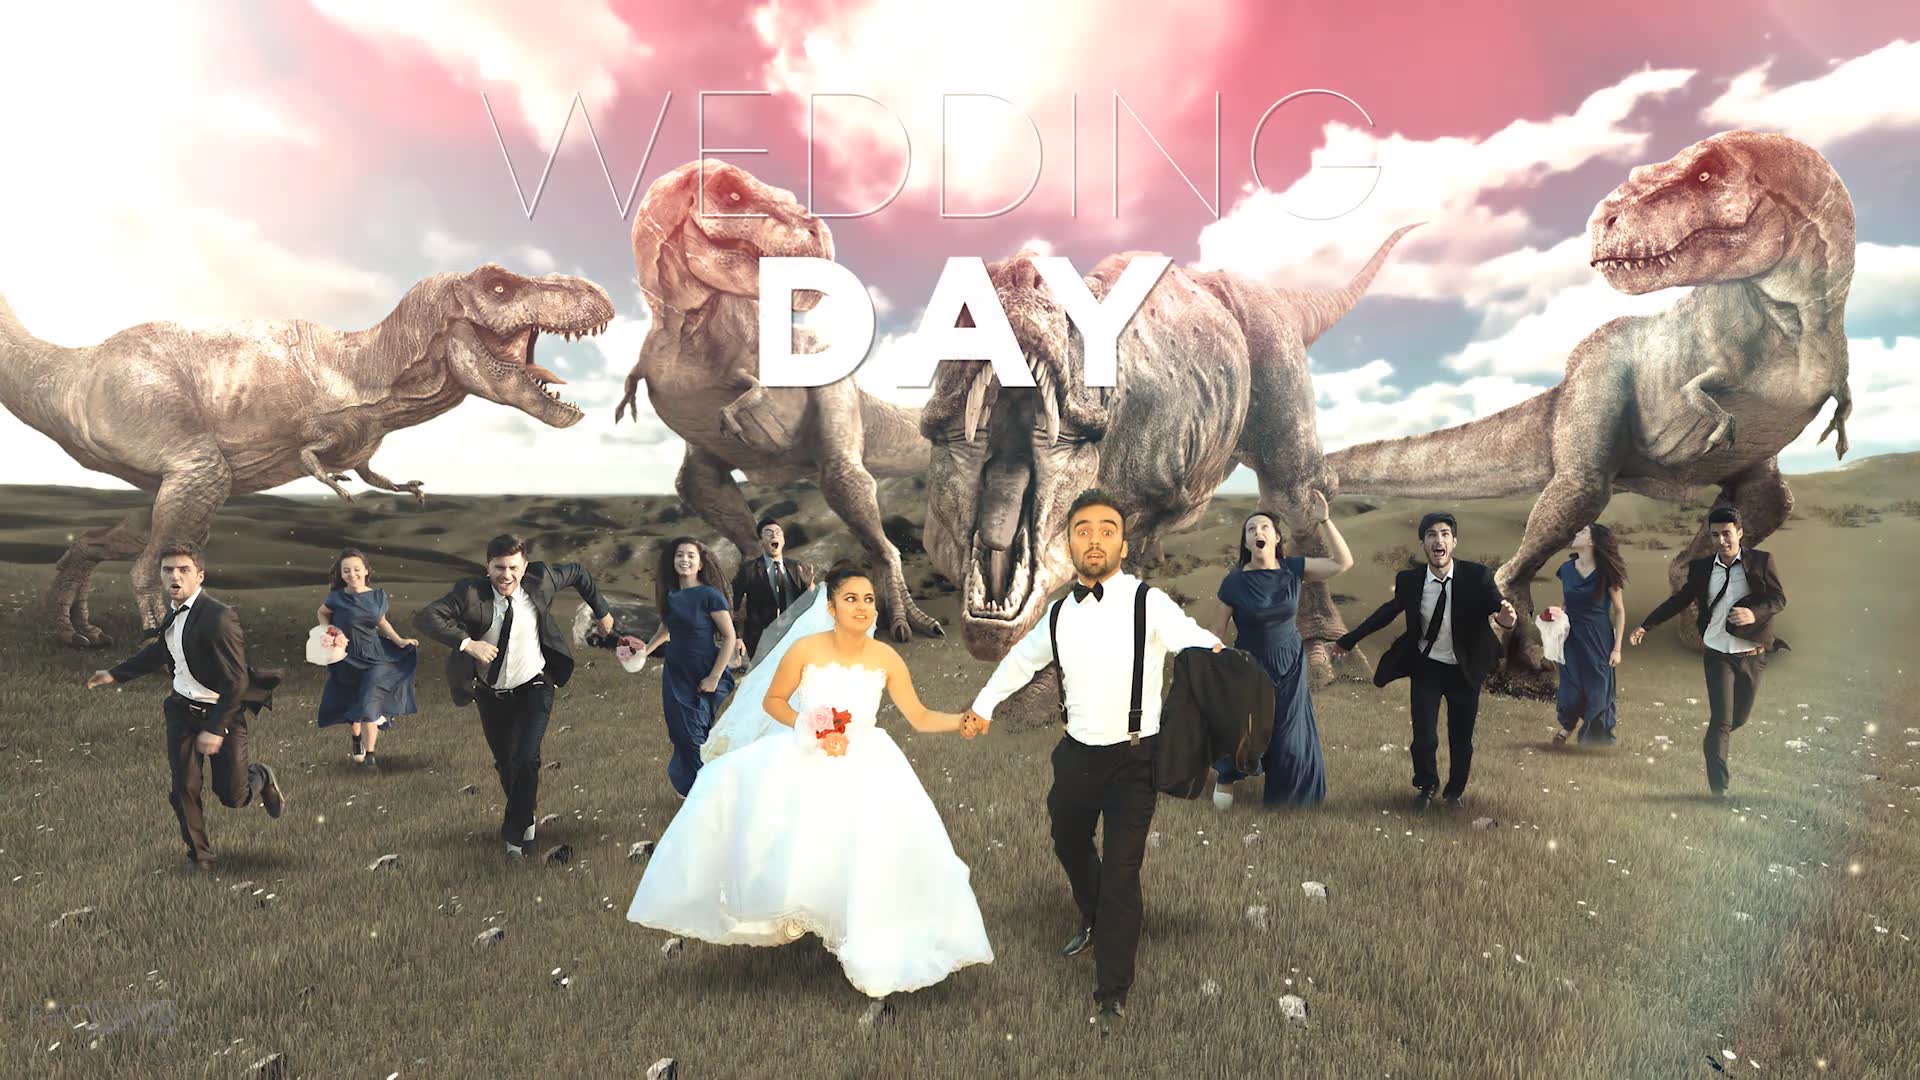 Wedding Day Fantasy Poster Teaser Maker - Download Videohive 19033198